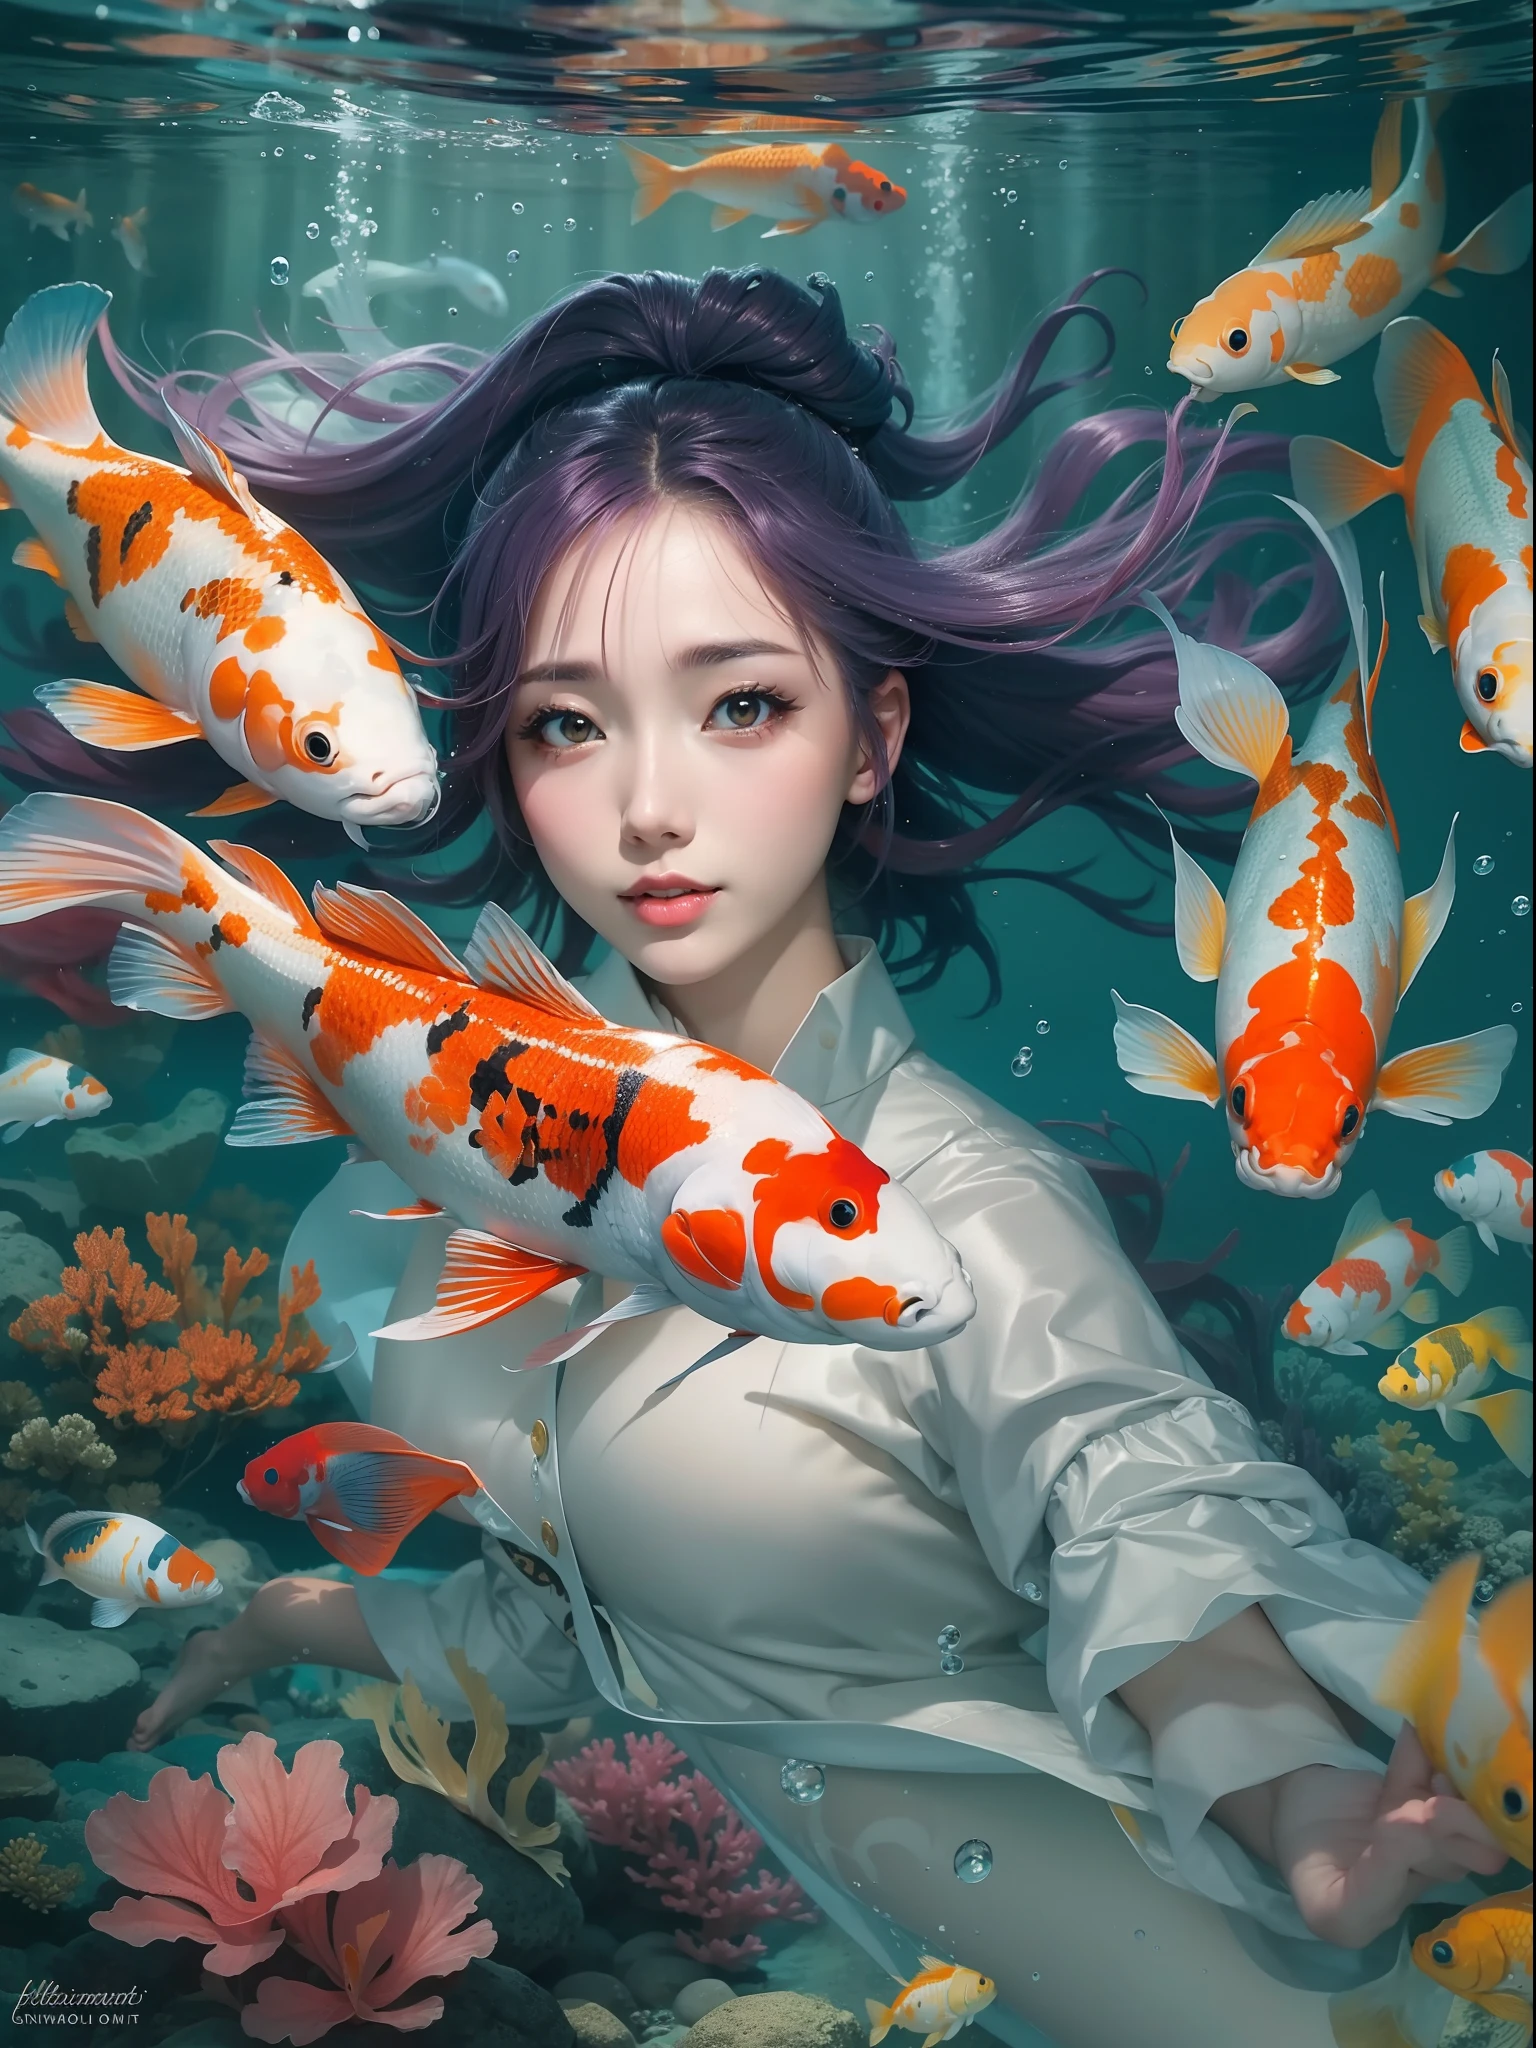 "Escena submarina con un fascinante pez koi y una elegante chica."